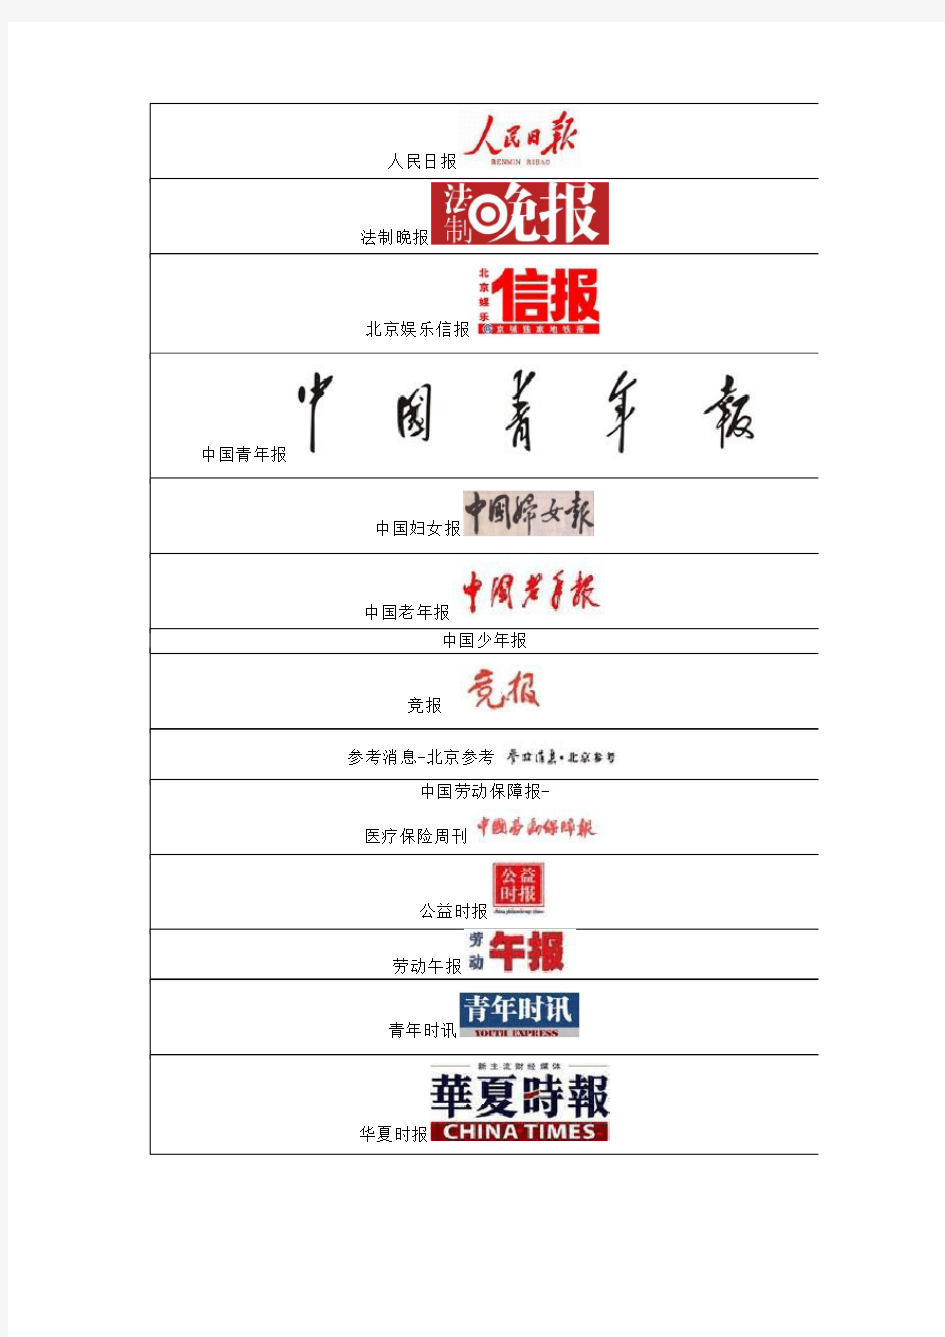 中国各地媒体名单(报纸、网站、电台)Logo大全